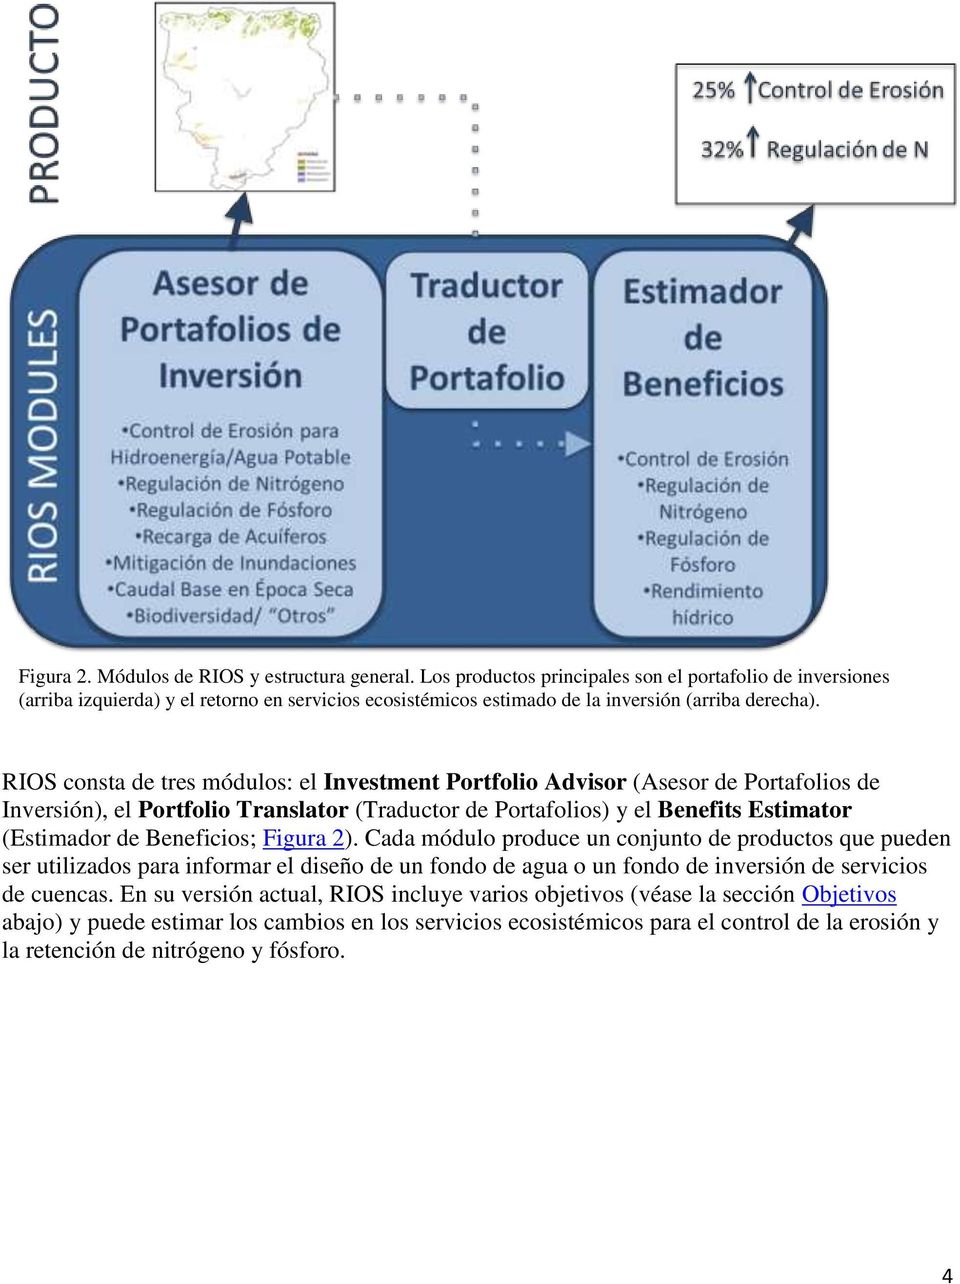 RIOS consta de tres módulos: el Investment Portfolio Advisor (Asesor de Portafolios de Inversión), el Portfolio Translator (Traductor de Portafolios) y el Benefits Estimator (Estimador de Beneficios;